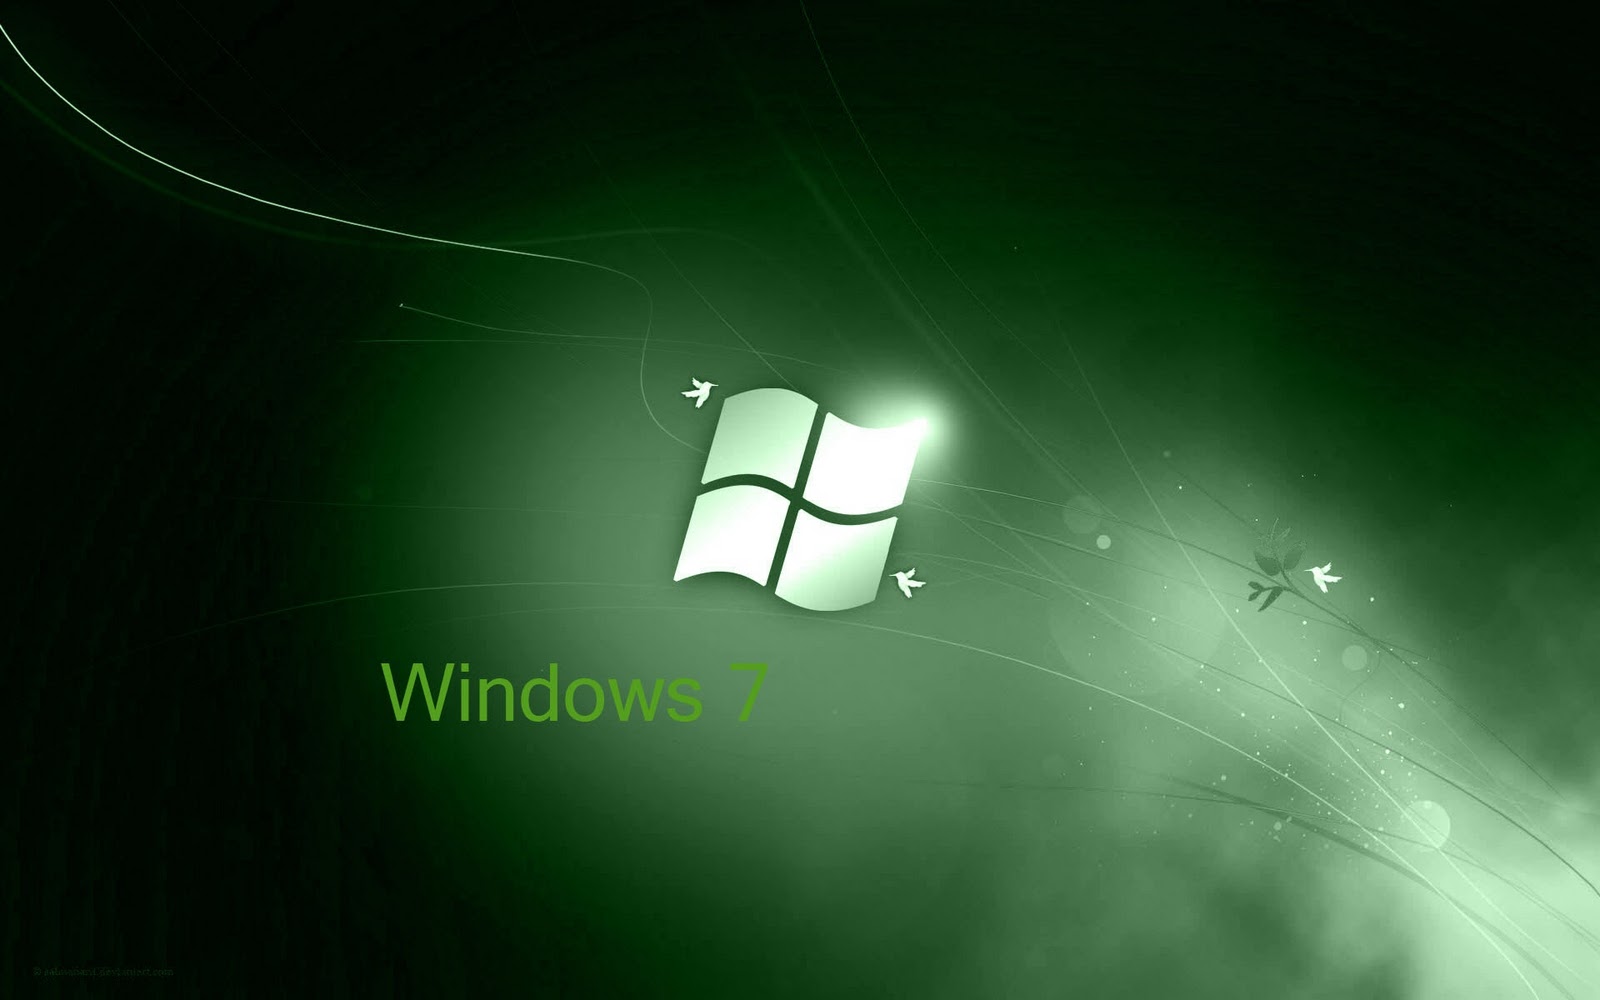 Hình nền desktop Windows 7 sẽ giúp bạn làm mới màn hình và trang trí cho máy tính của mình. Với một bộ sưu tập hình nền đa dạng và phong phú, không khó để bạn lựa chọn cho mình những bức ảnh nền ấn tượng và đẹp mắt nhất. Hãy tham gia ngay để khám phá những bức ảnh tuyệt vời.